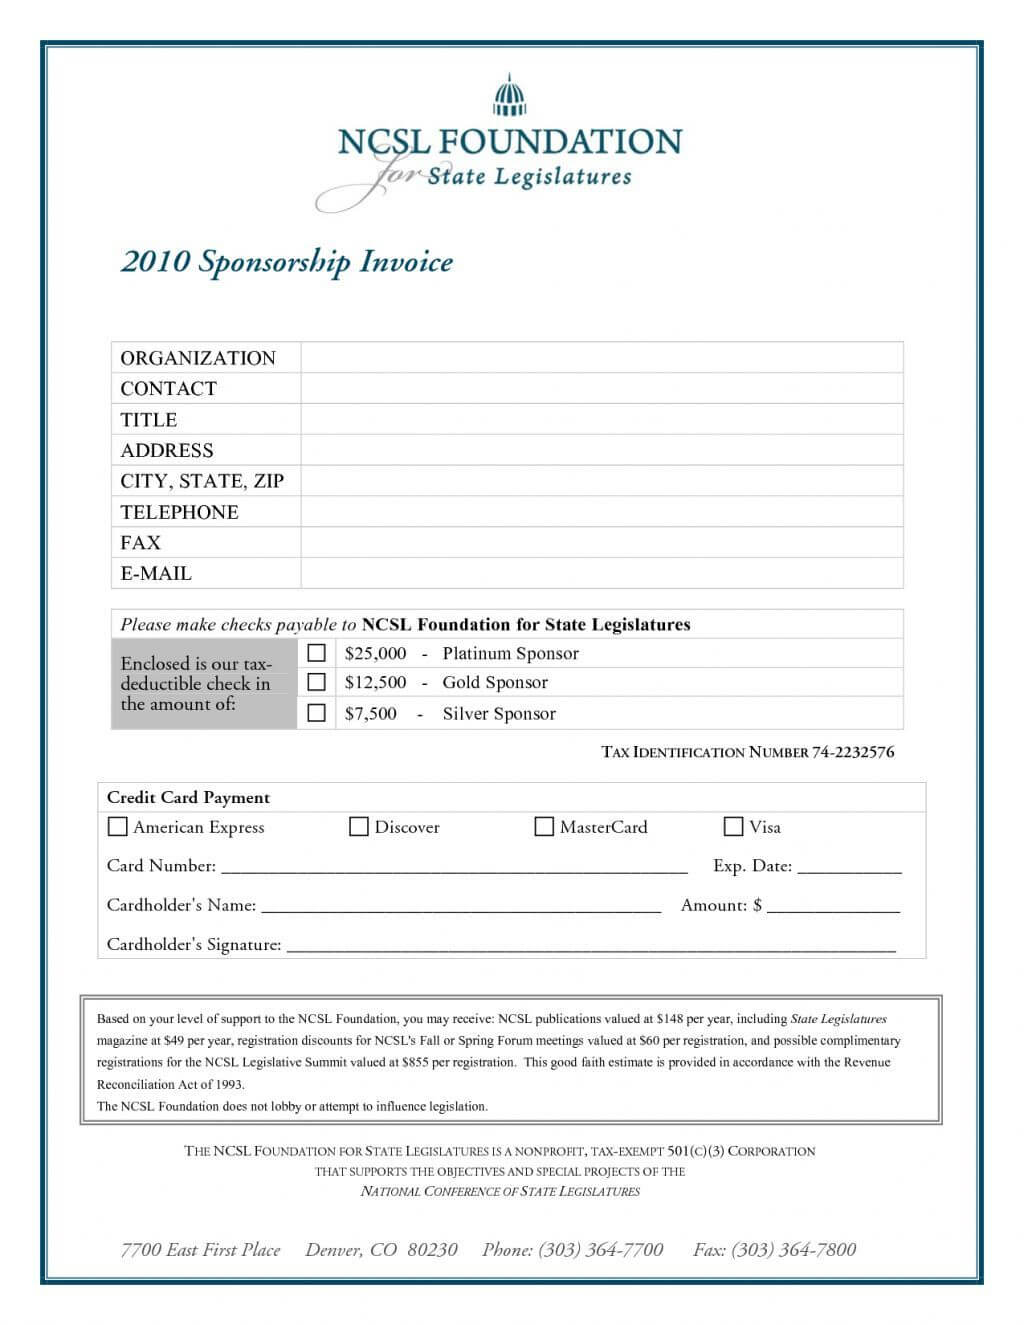 Sponsorship Invoice Sample – Free Download In Sponsor Card Template